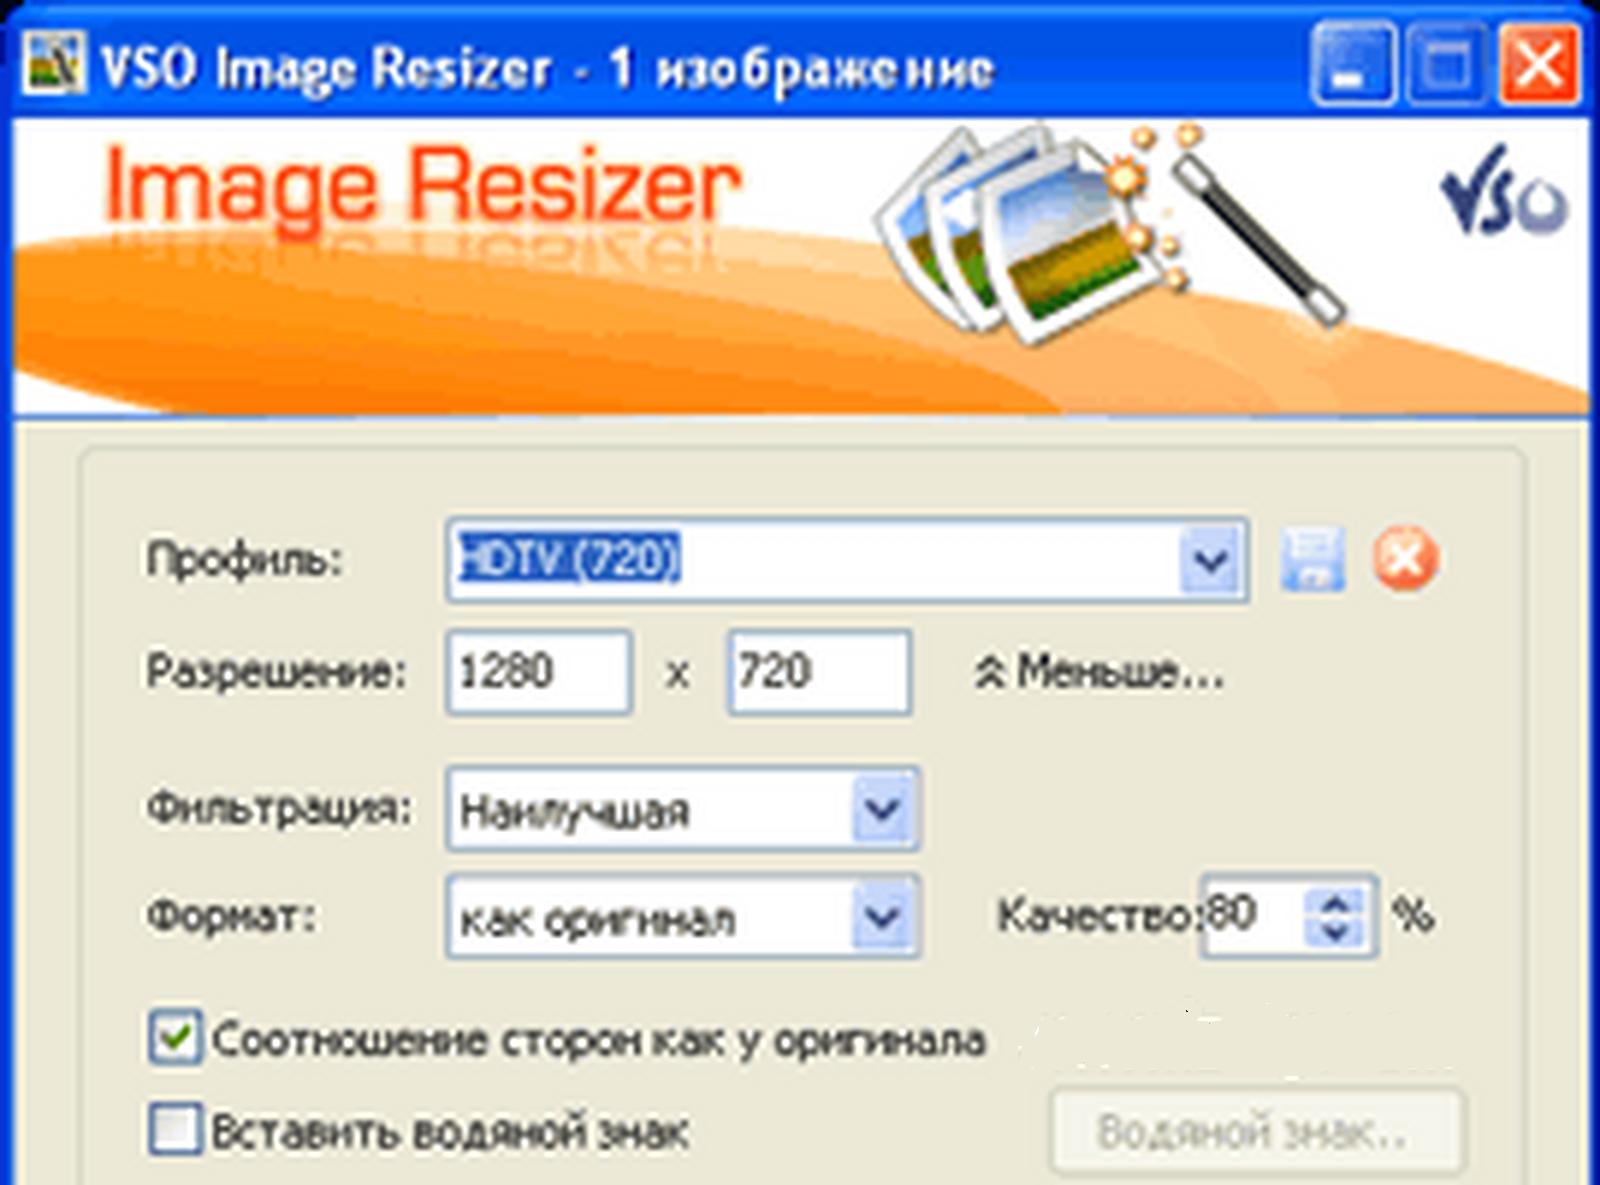 Обновилась бесплатная программа Image Resizer, предназначенная для